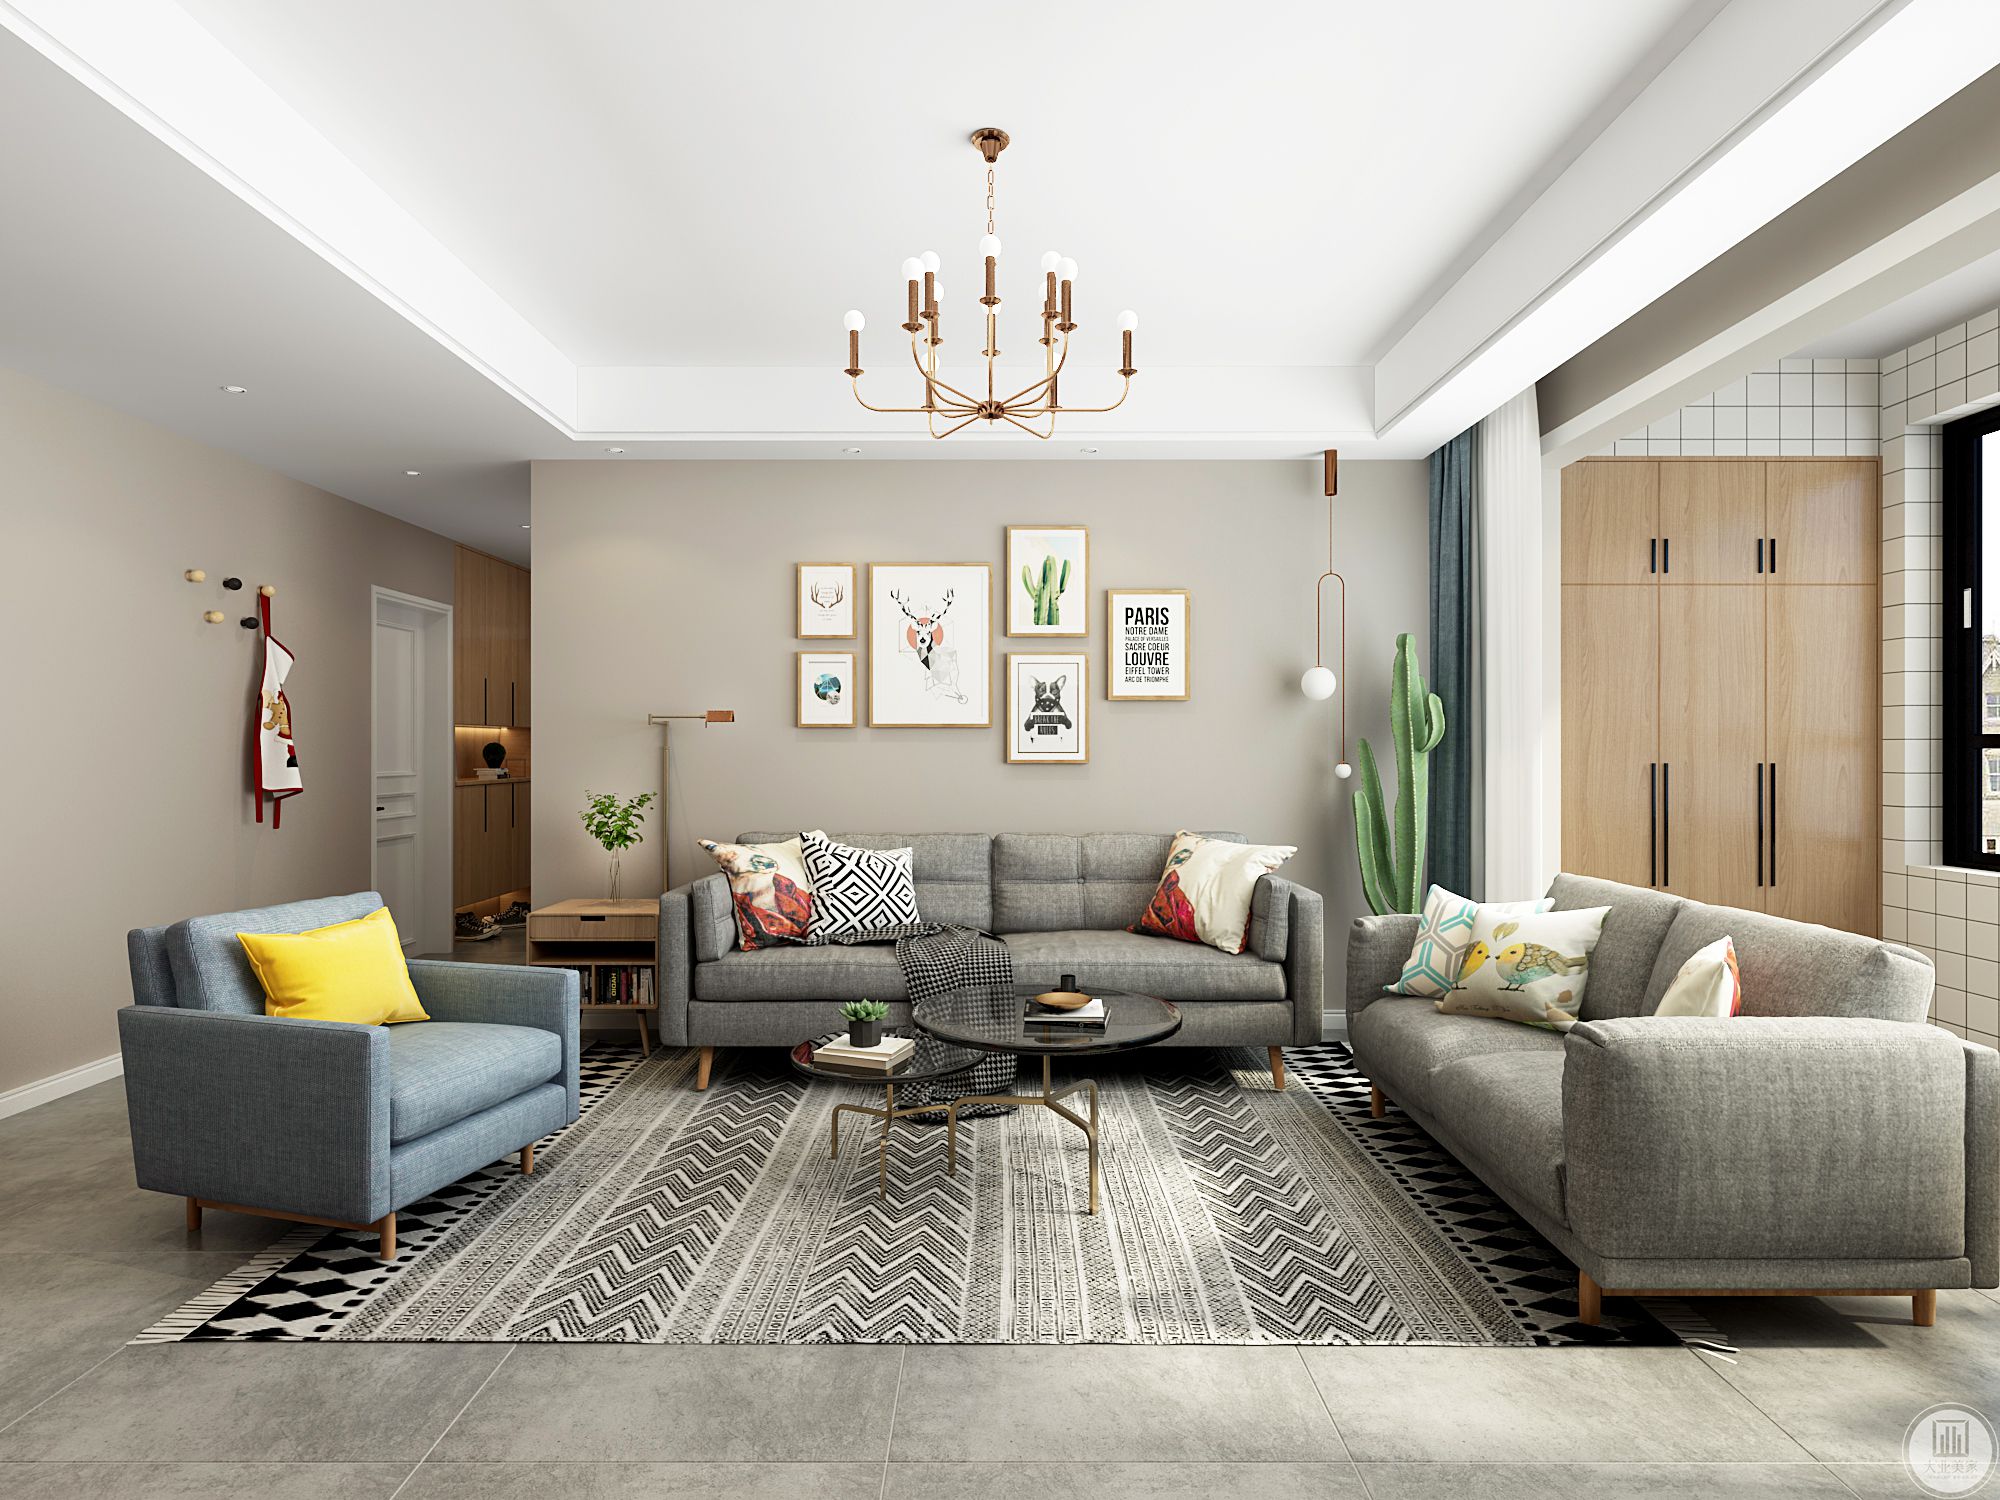 客厅空间以原木色搭配纯净白，天然材质与留白在融会贯通之间体现出轻松自然的舒适氛围